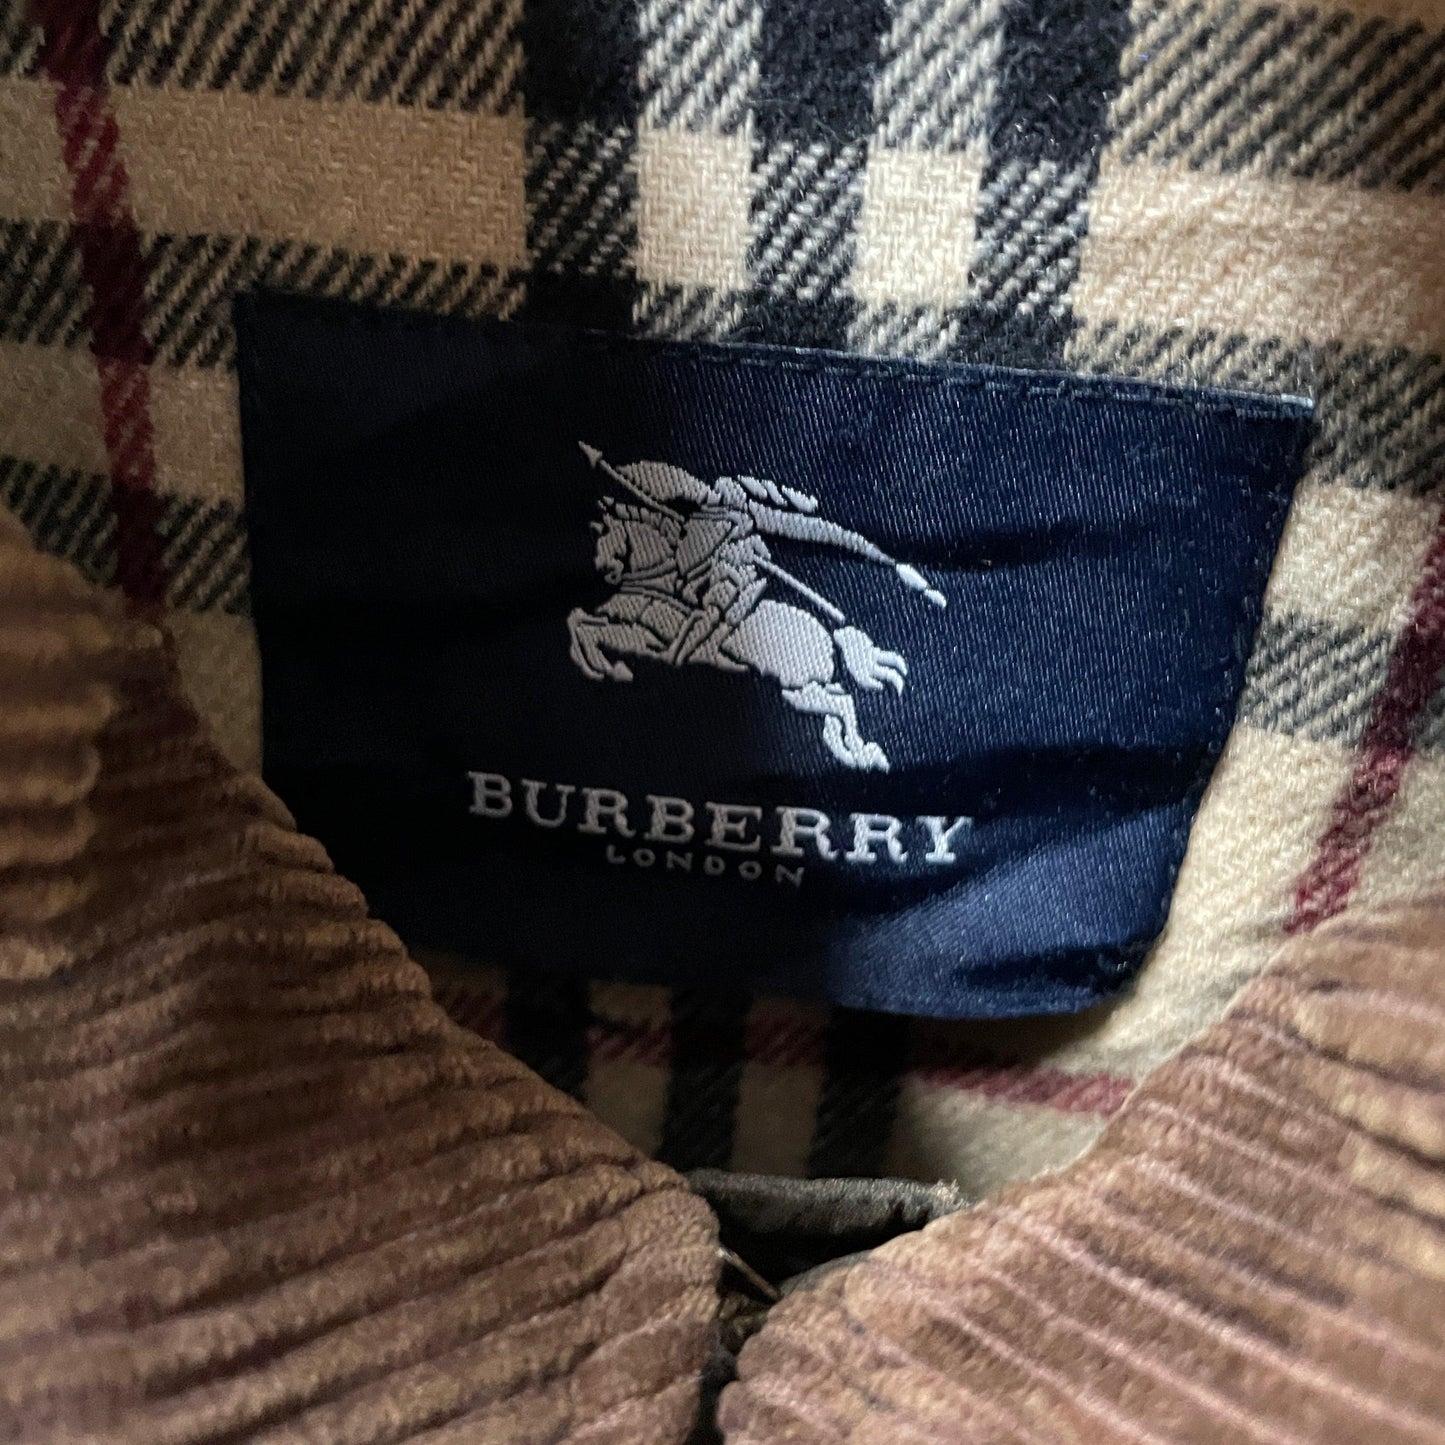 burberry jacket